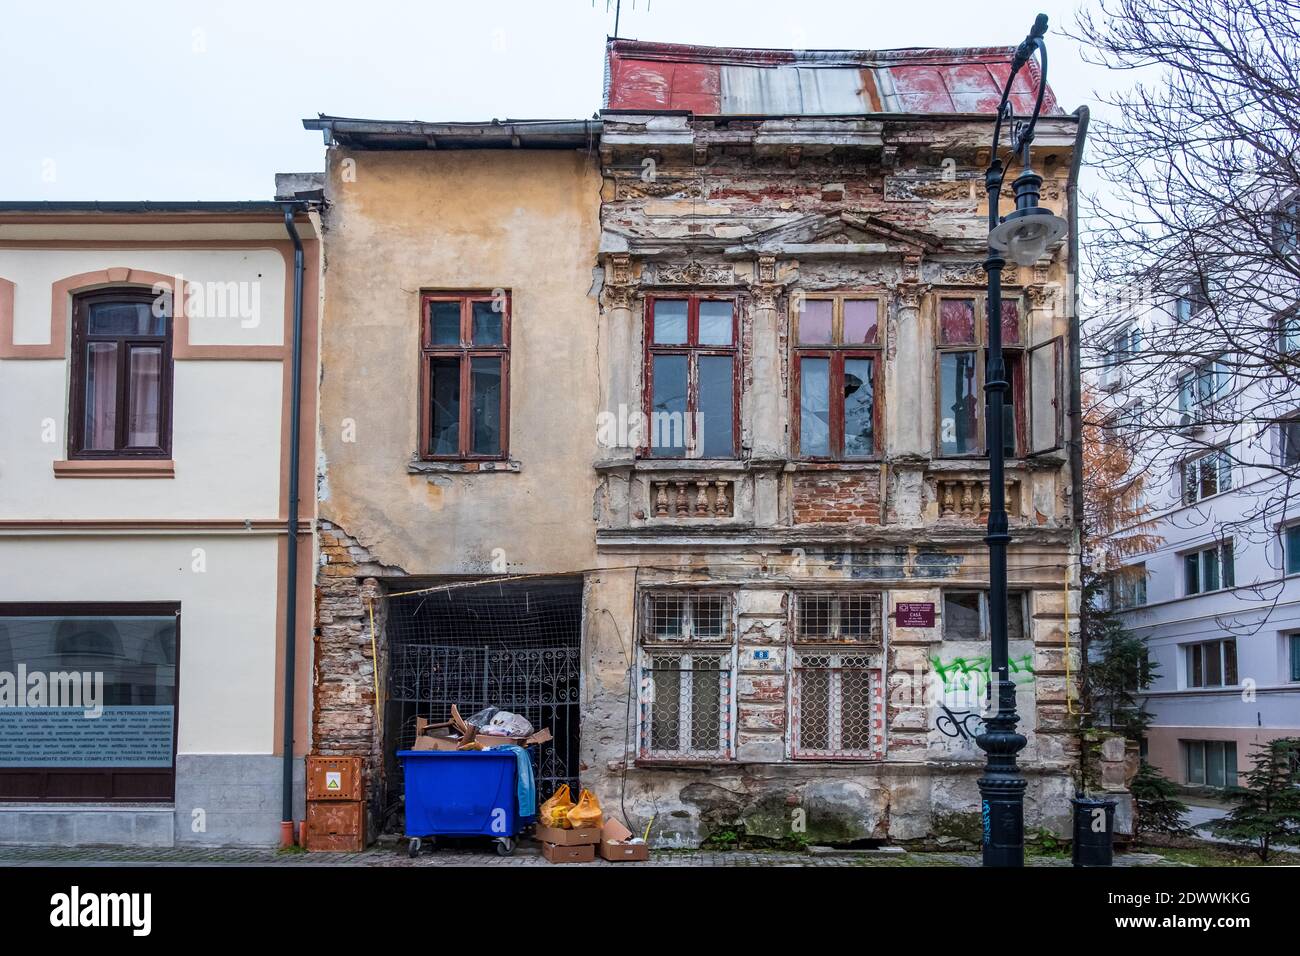 Was bleibt hinter Kommunismus, aufgegeben und zerstört historische Architektur in Craiova Innenstadt, Rumänien, EU. Stockfoto